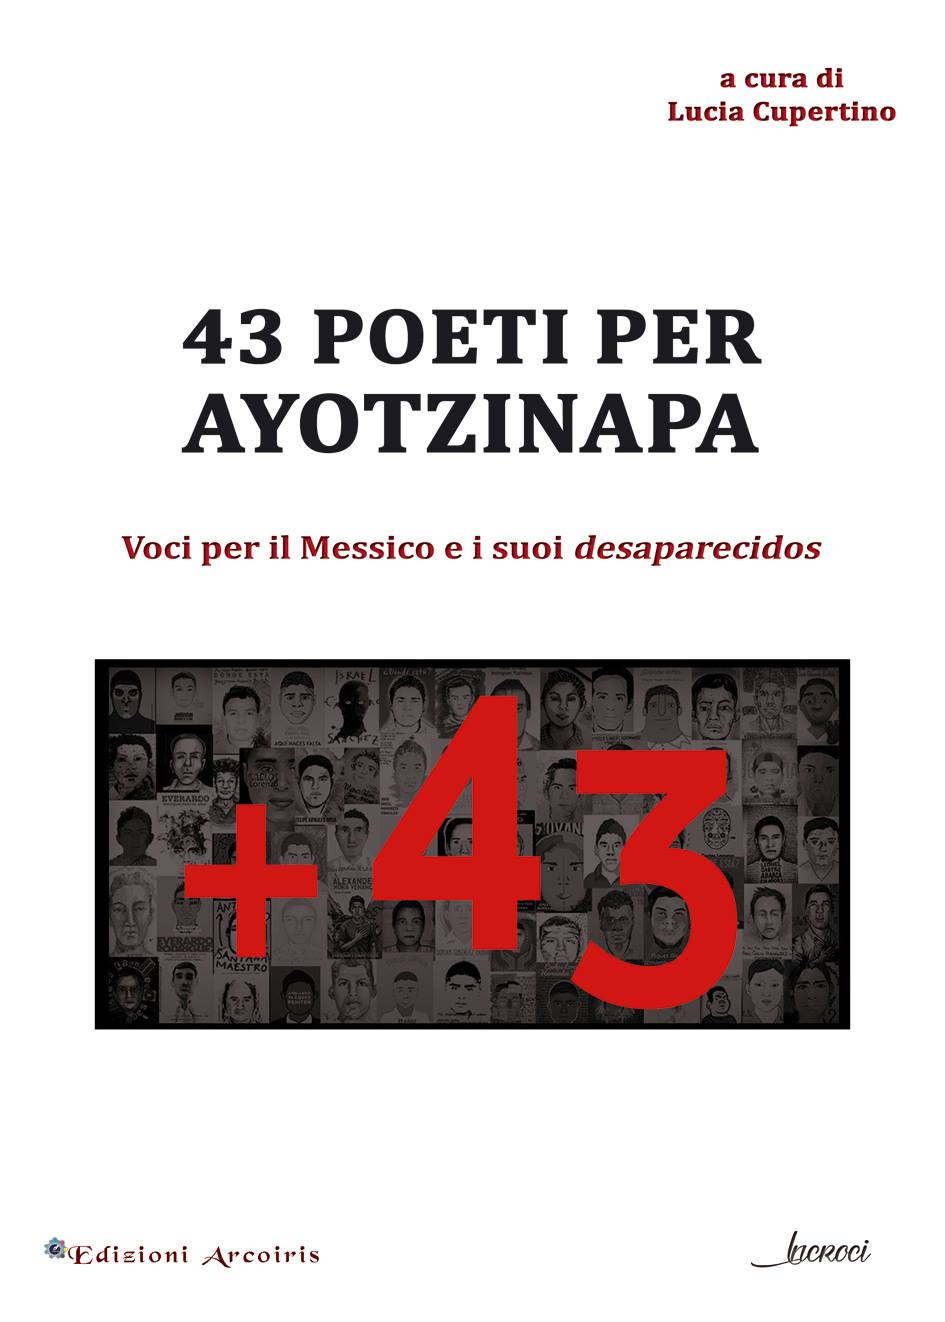 43 Poeti per Ayotzinapa-Los 43 Poetas por Ayotzinapa